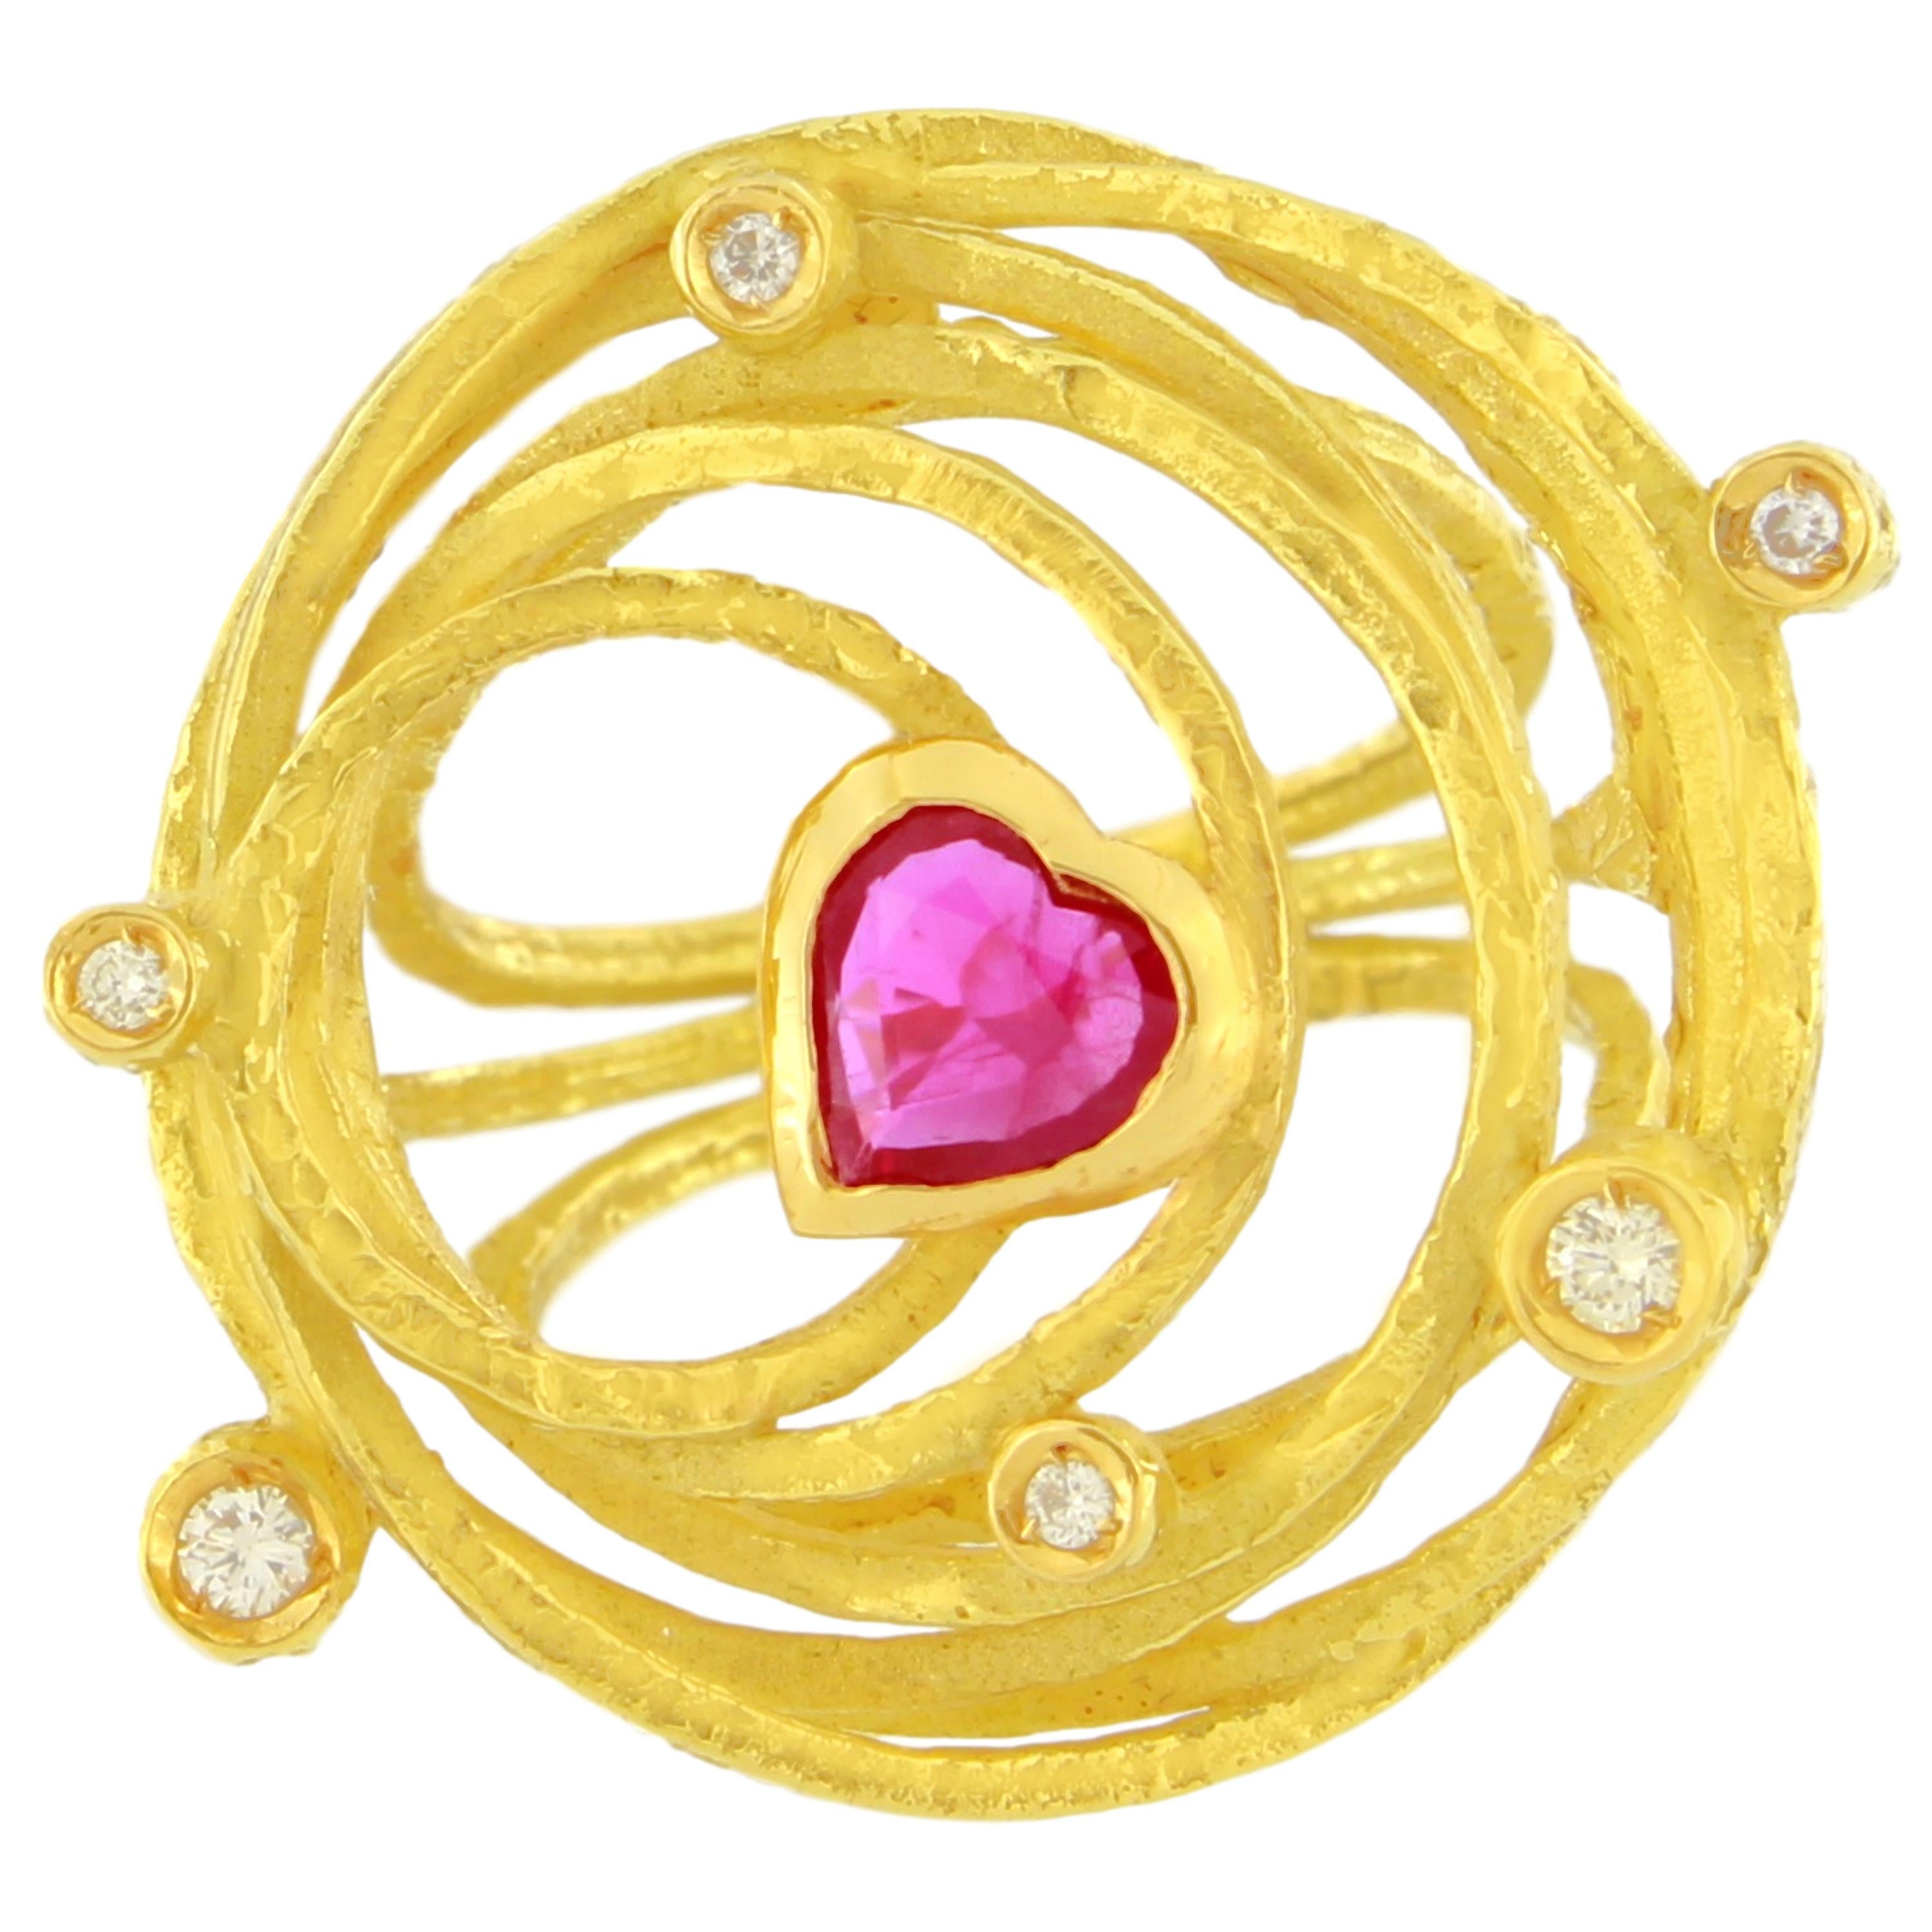 Sacchi Bague cocktail en or jaune 18 carats avec grand cœur en rubis, diamants et pierres précieuses